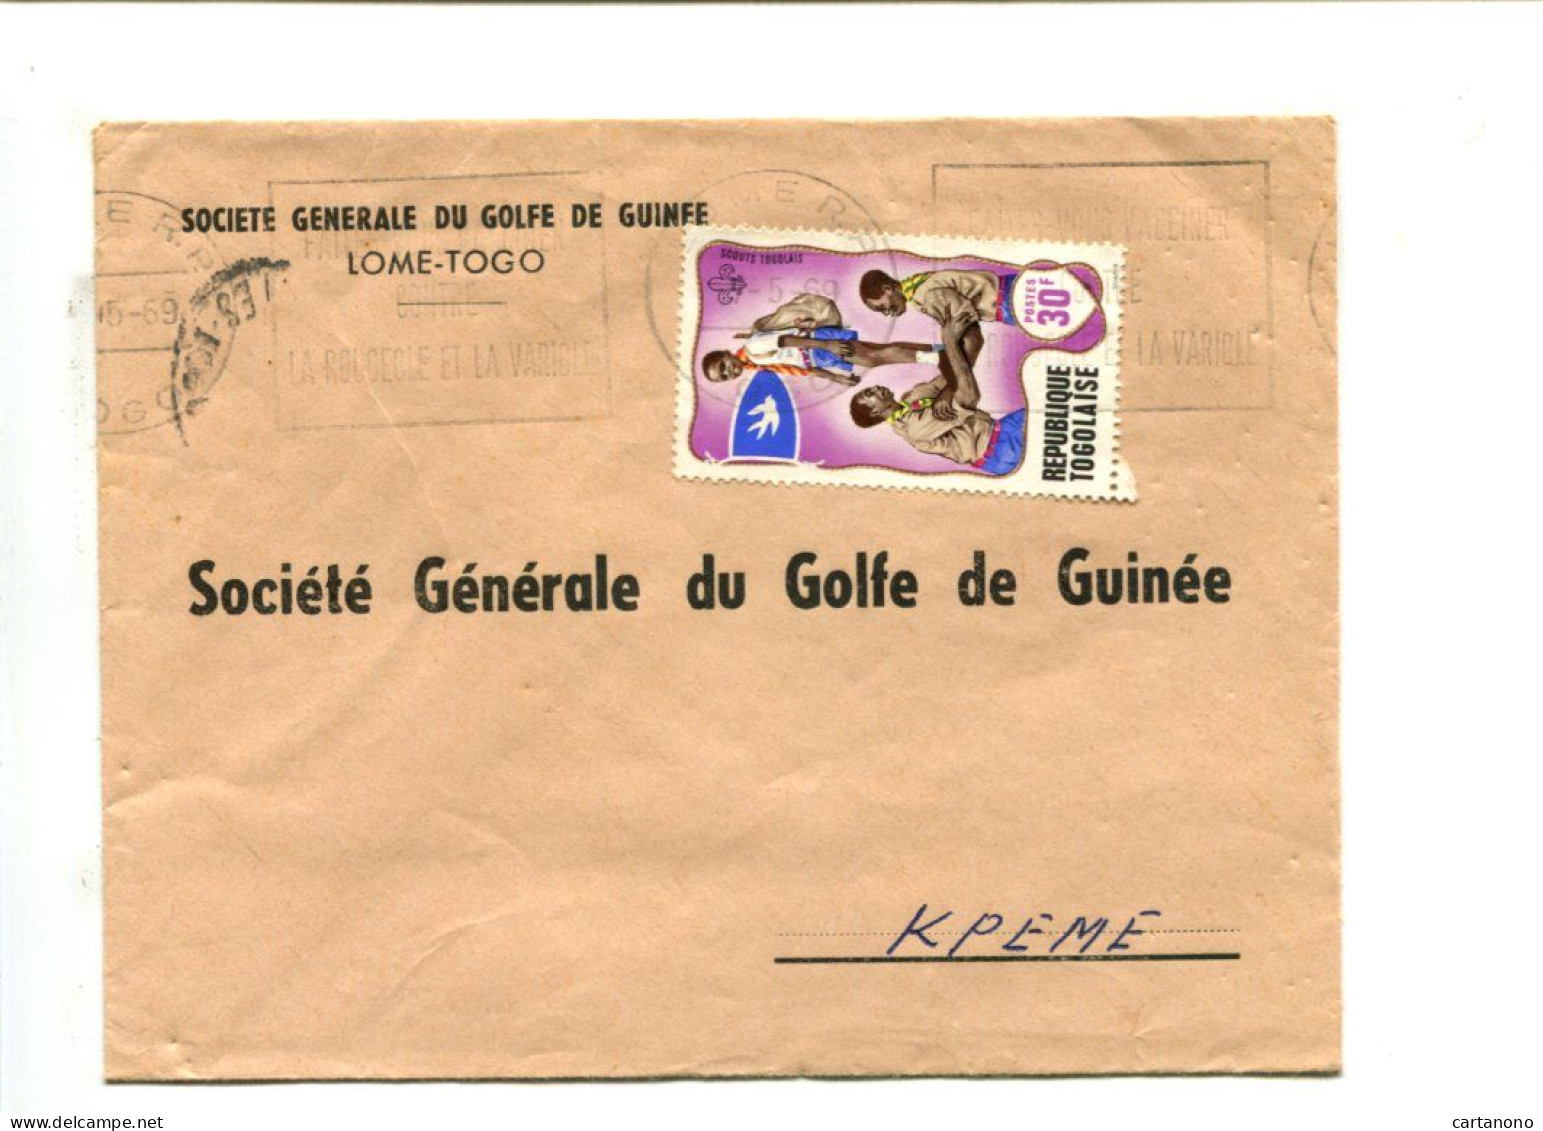 SCOUTISME - Rép. Togolaise - Affranchissement Sur Lettre Par Avion - Scouts Togolais - Covers & Documents